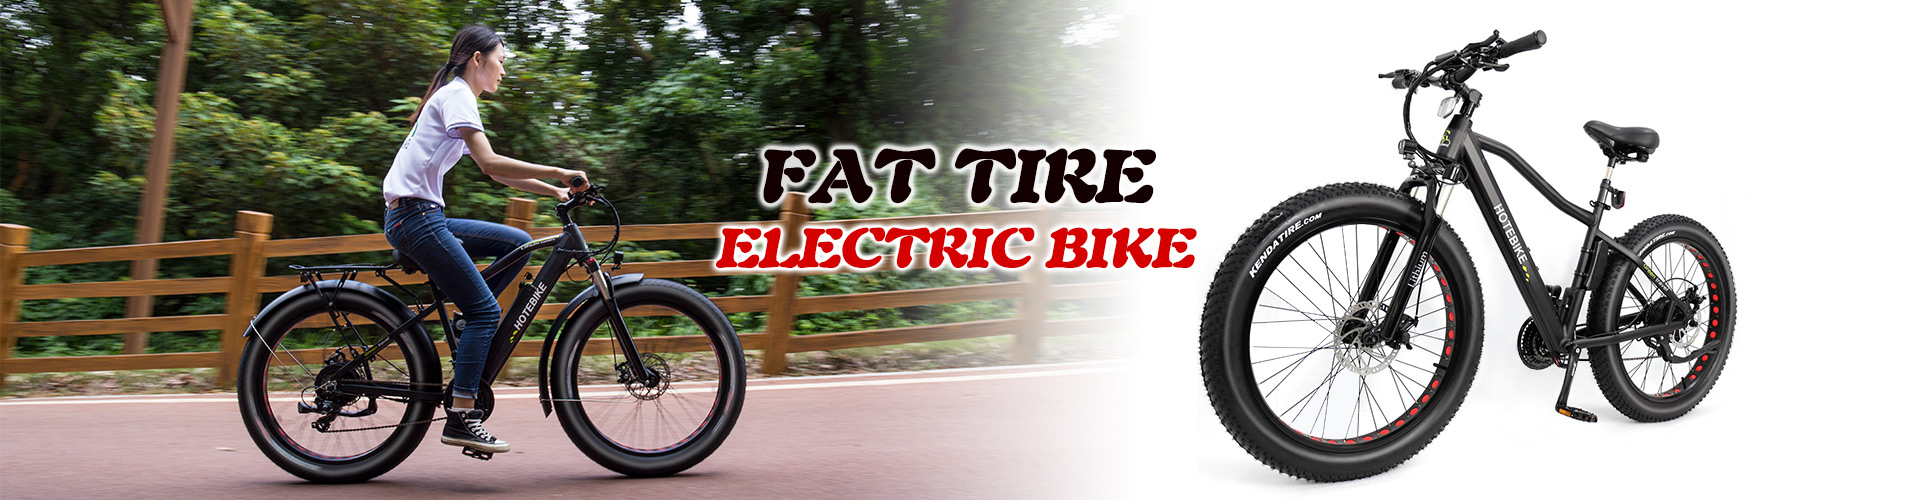 fedt dæk elektrisk cykel